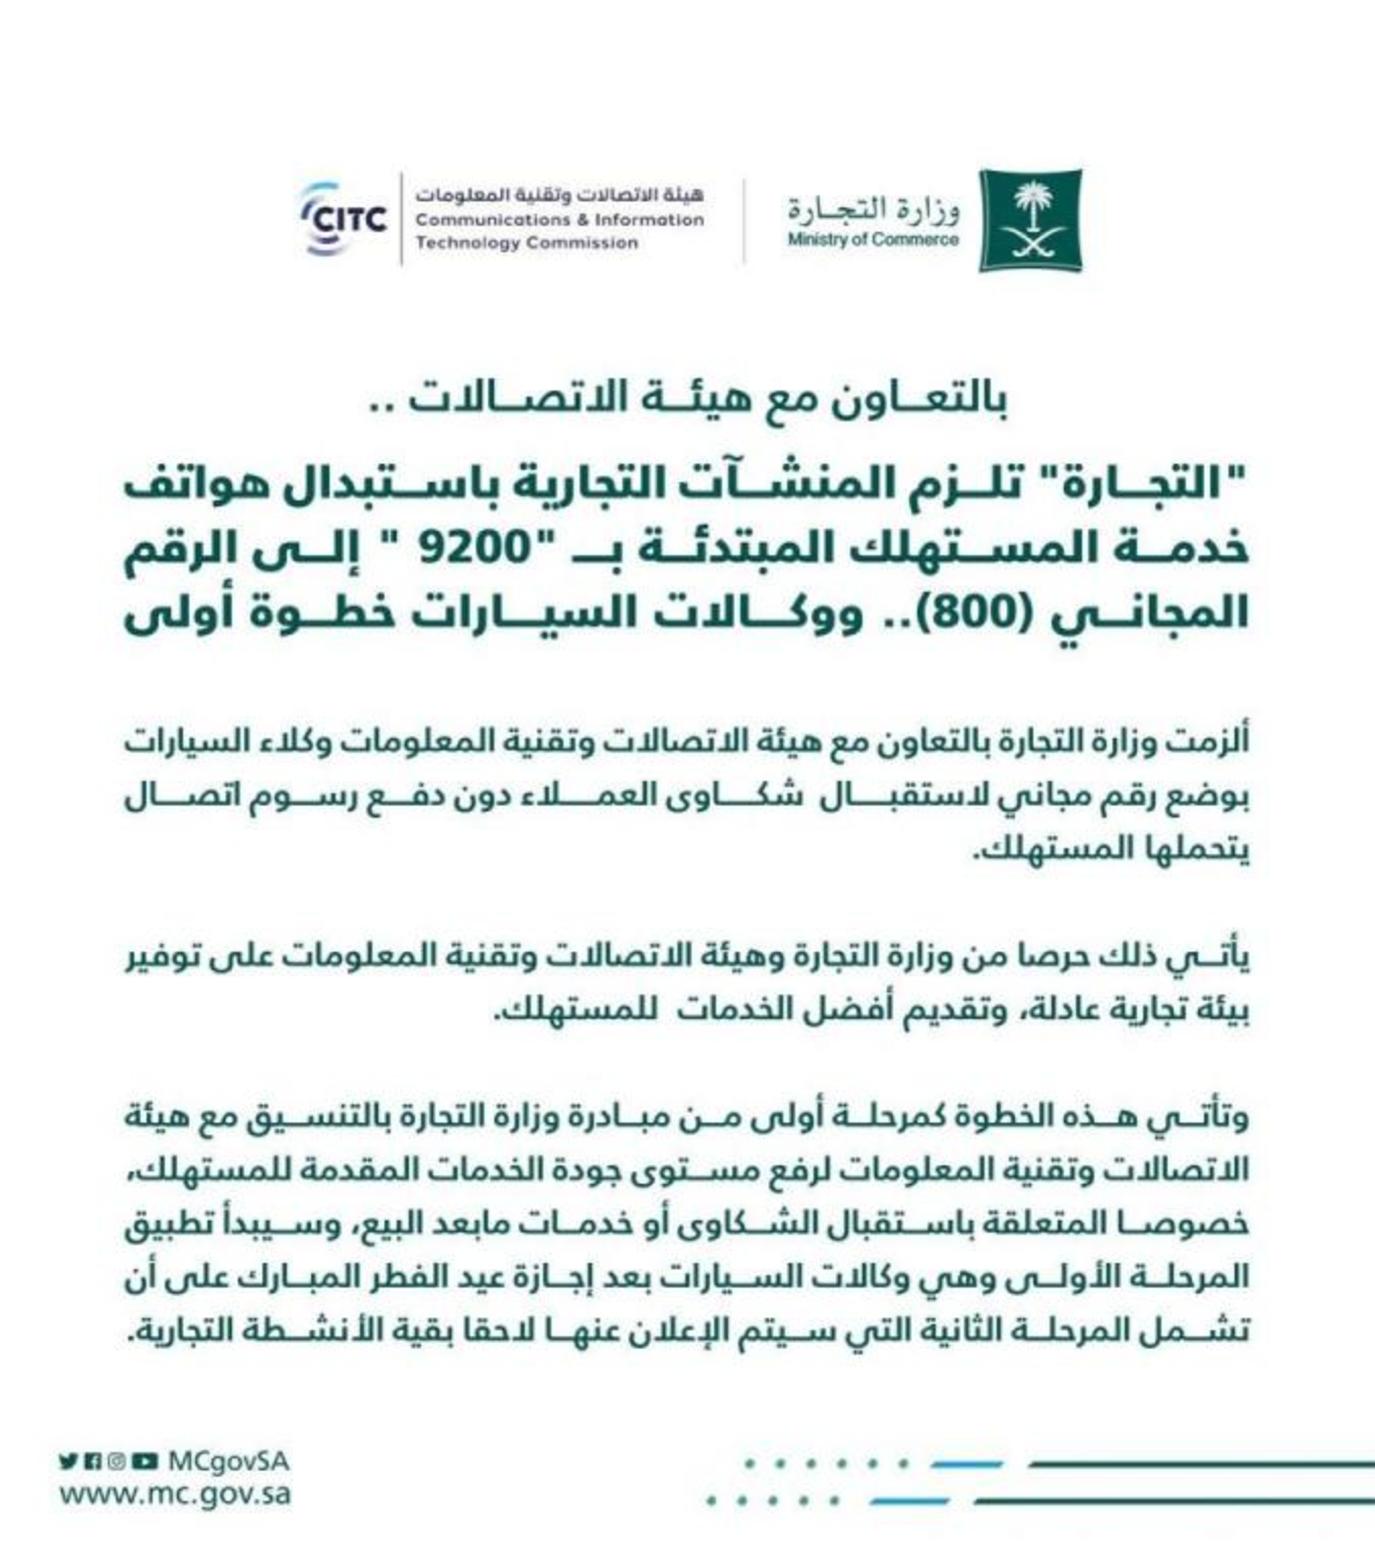 السعودية المعلومات الاتصالات هيئة وتقنية 